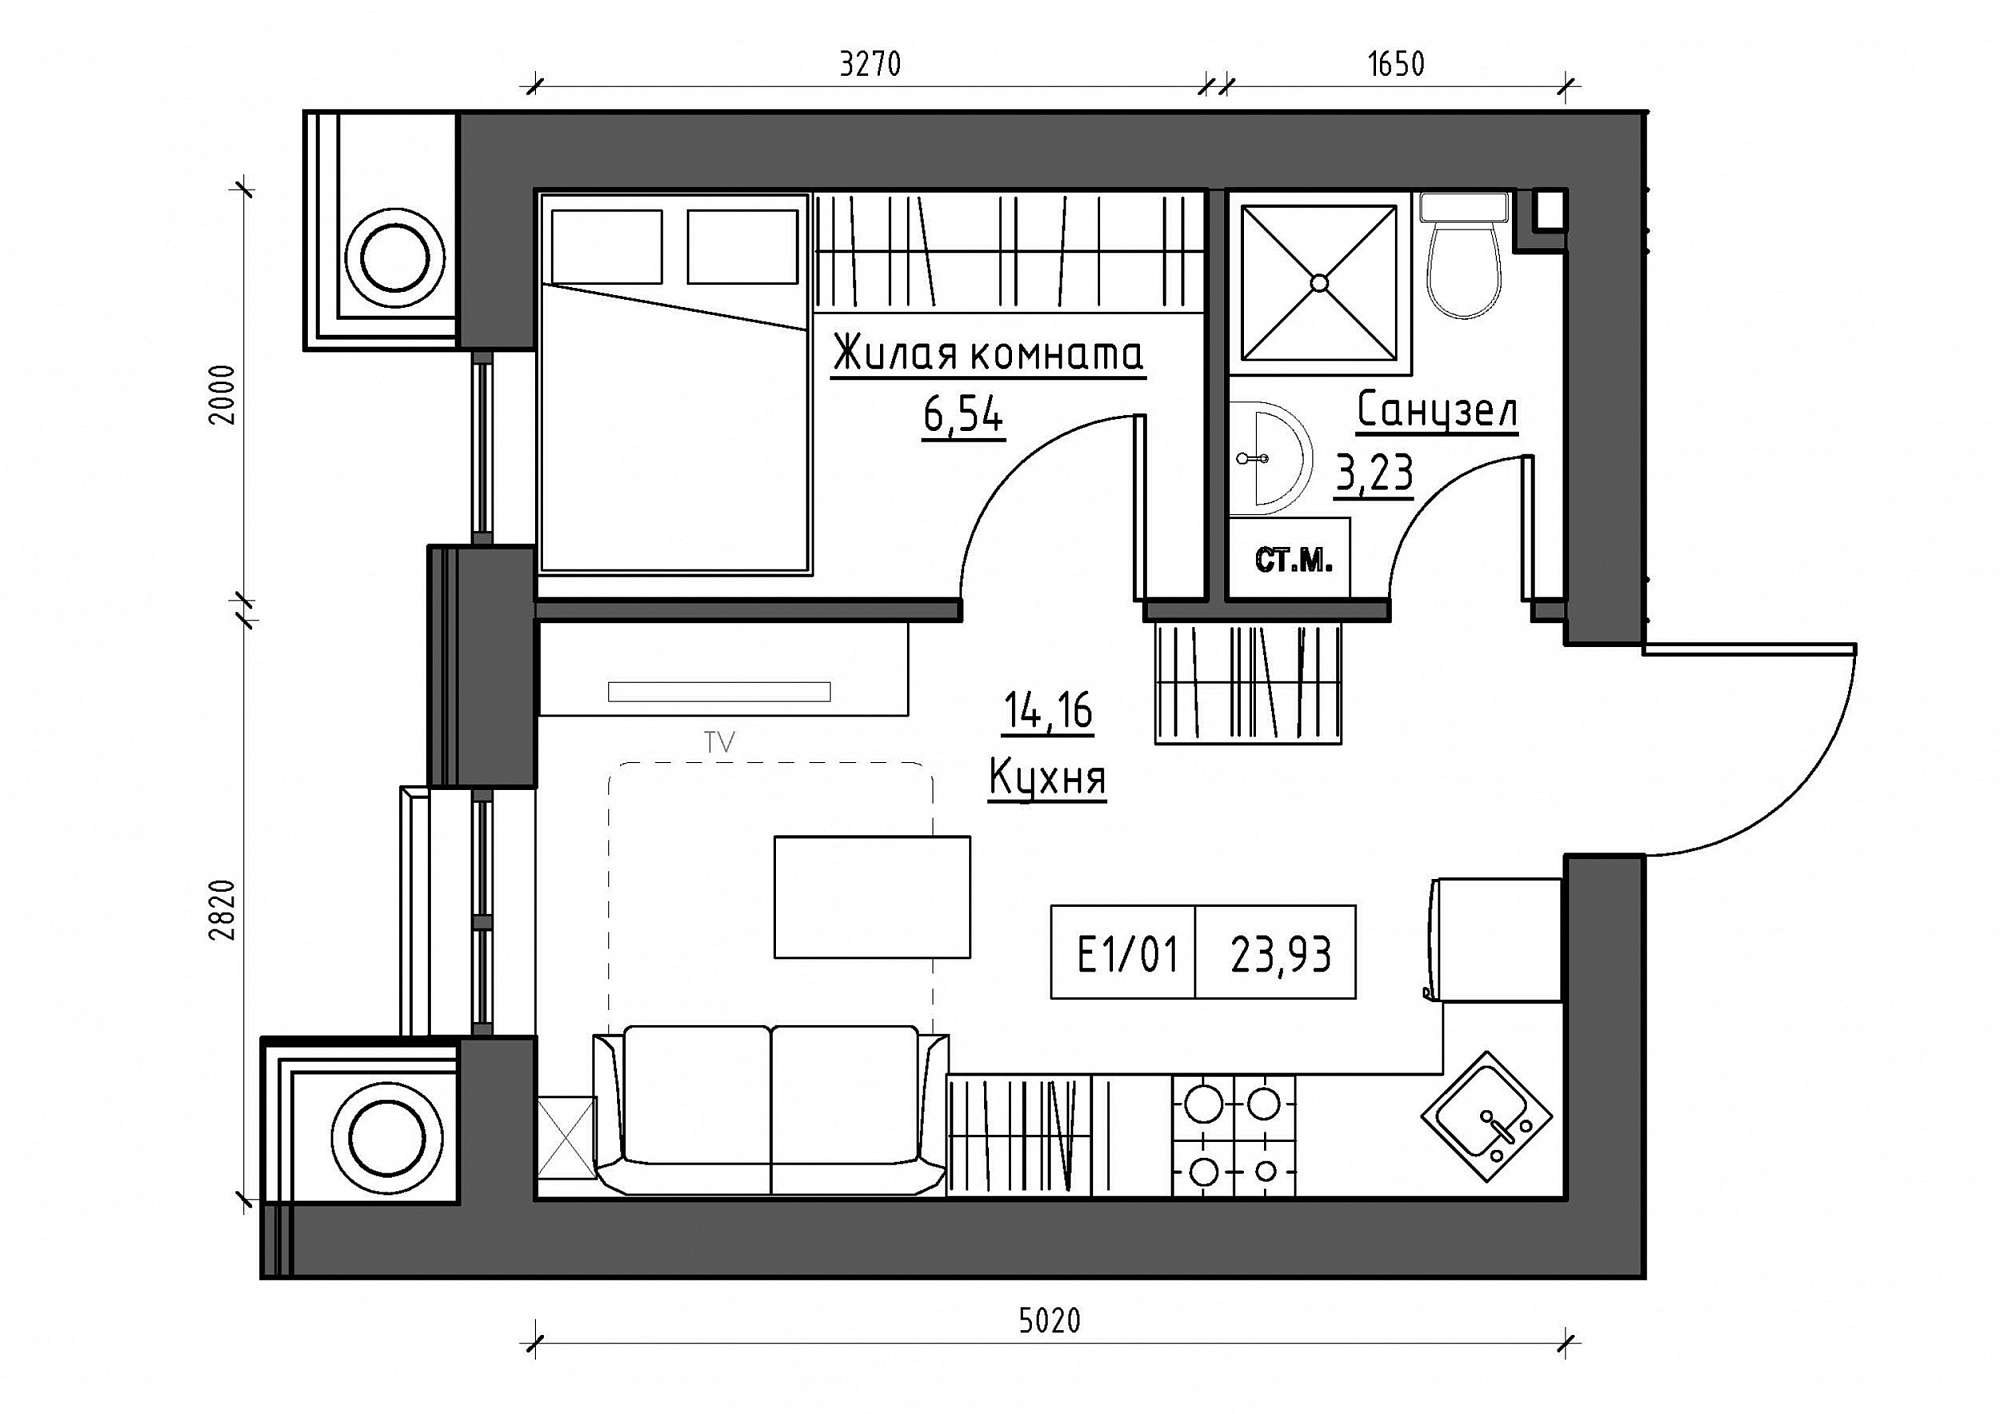 Планування 1-к квартира площею 23.93м2, KS-012-02/0012.